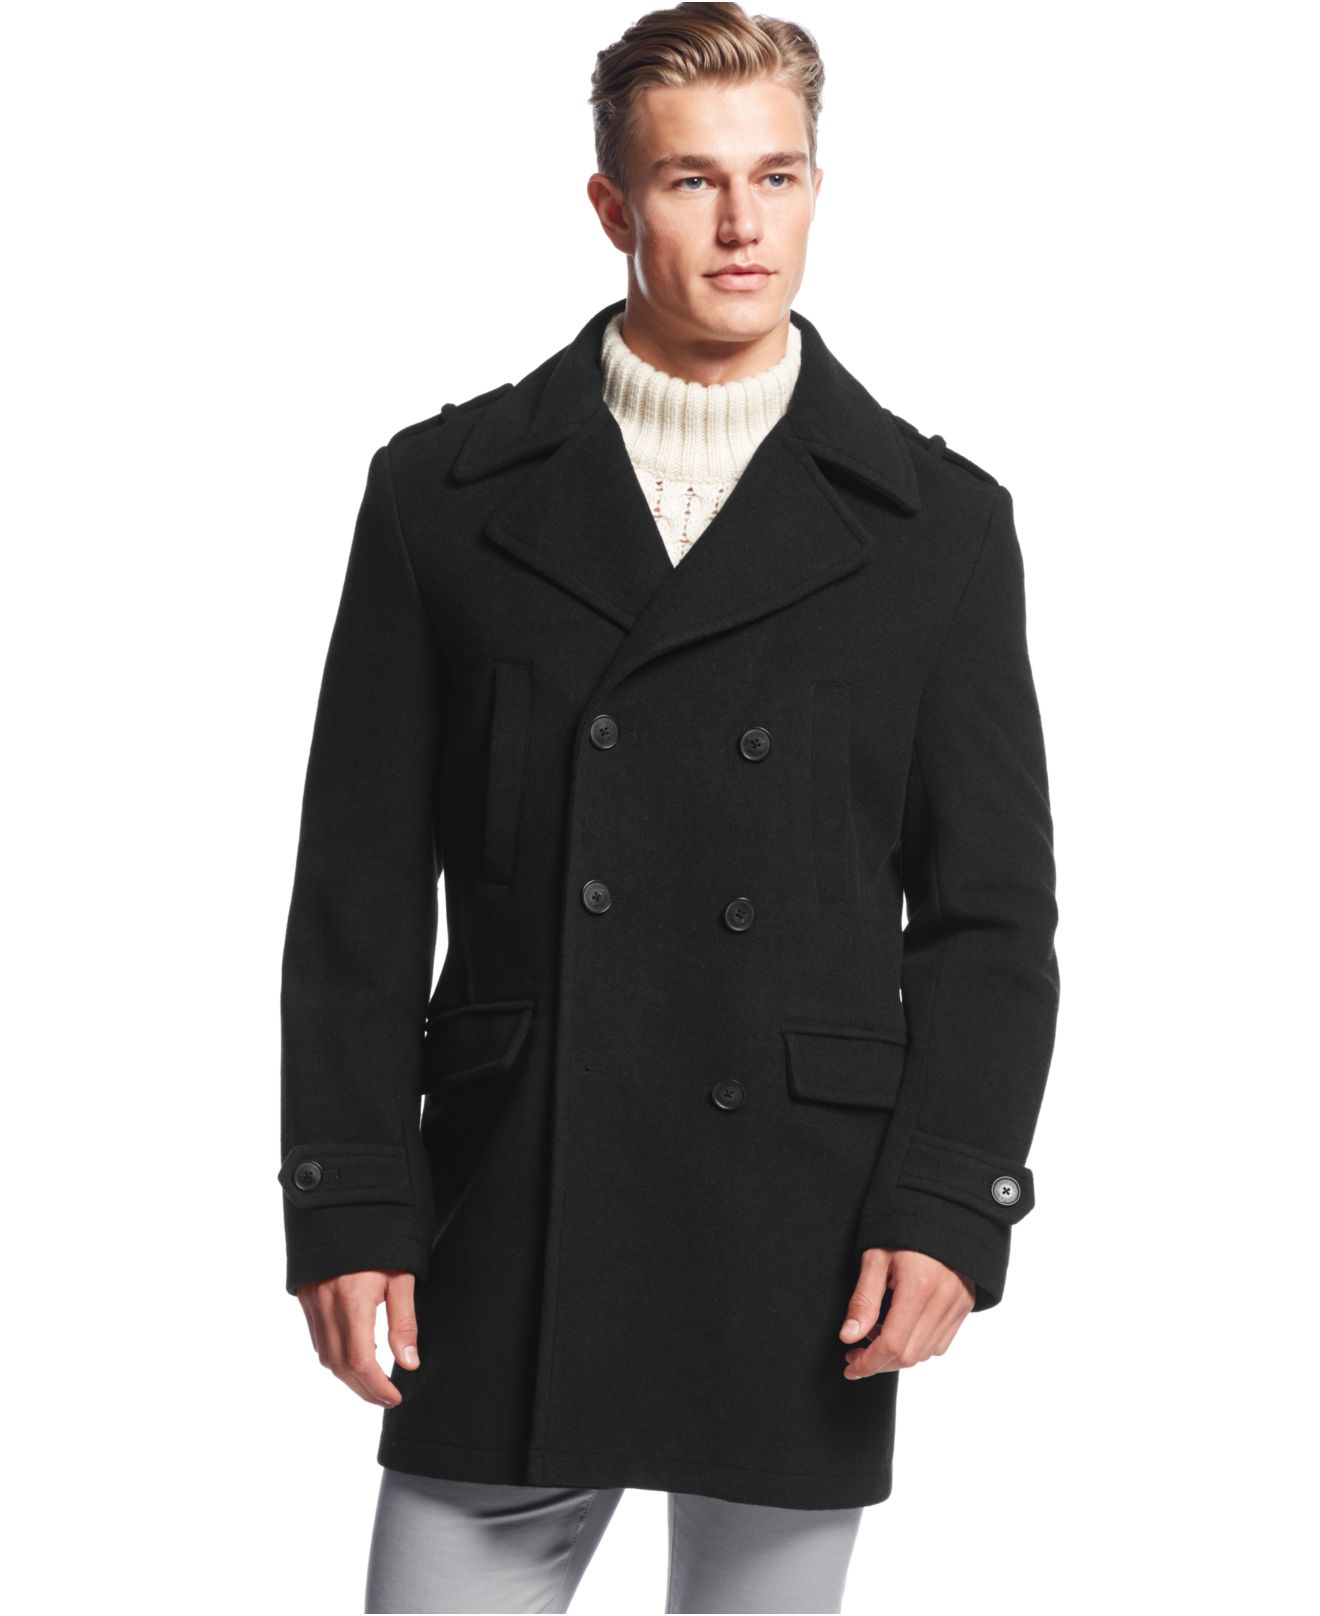 Calvin Klein Wool Montreal Solid Slim-fit Peacoat in Black for Men - Lyst